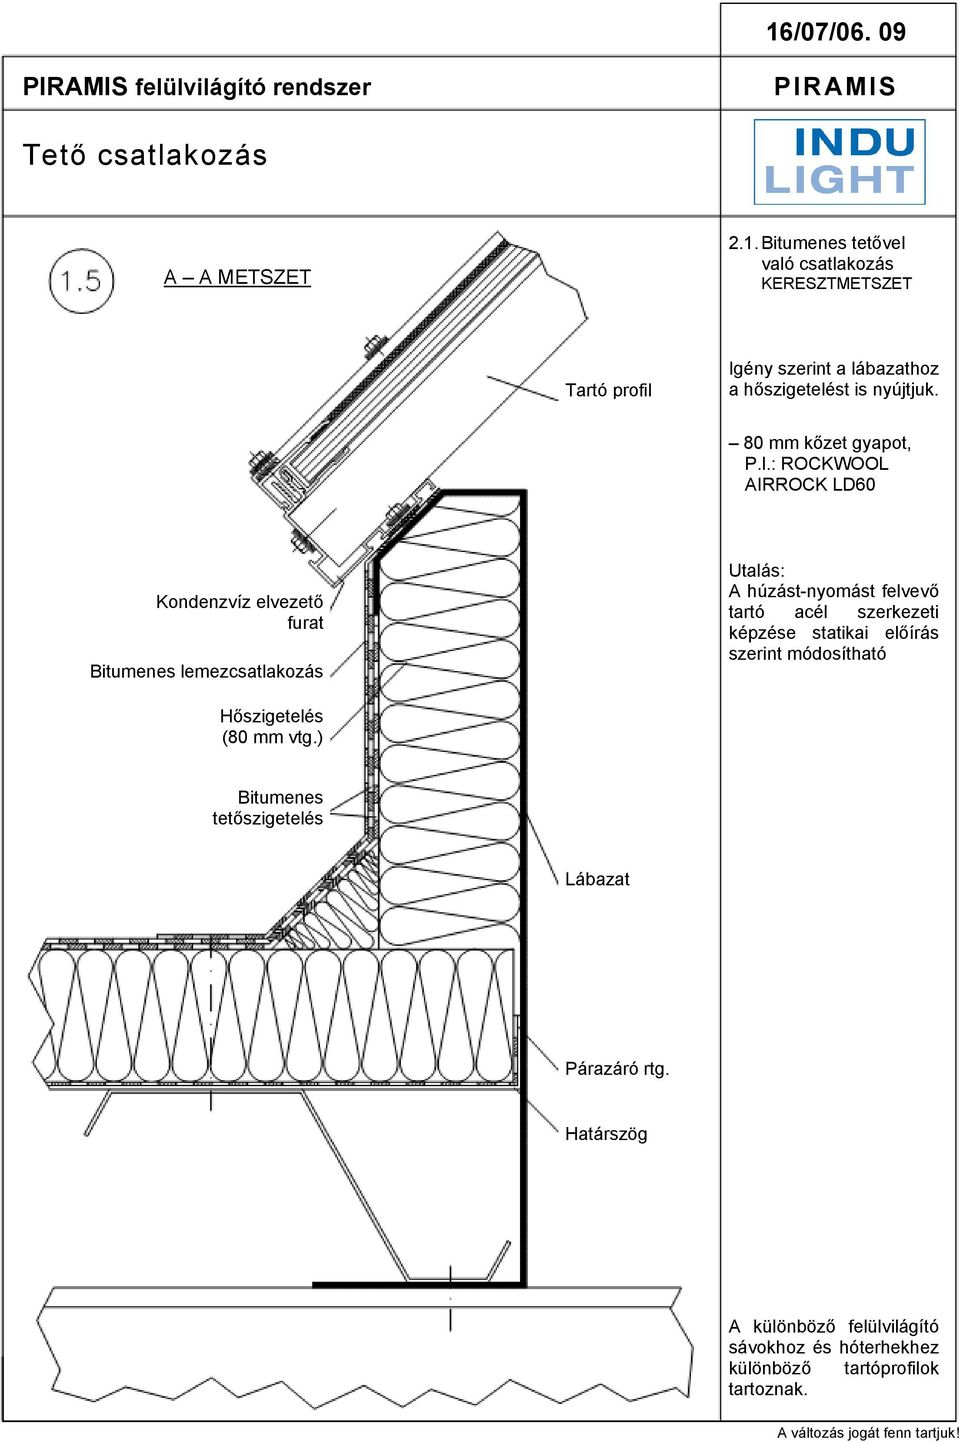 : ROCKWOOL AIRROCK LD60 Kondenzvíz elvezető furat Bitumenes lemezcsatlakozás Utalás: A húzást-nyomást felvevő tartó acél szerkezeti képzése